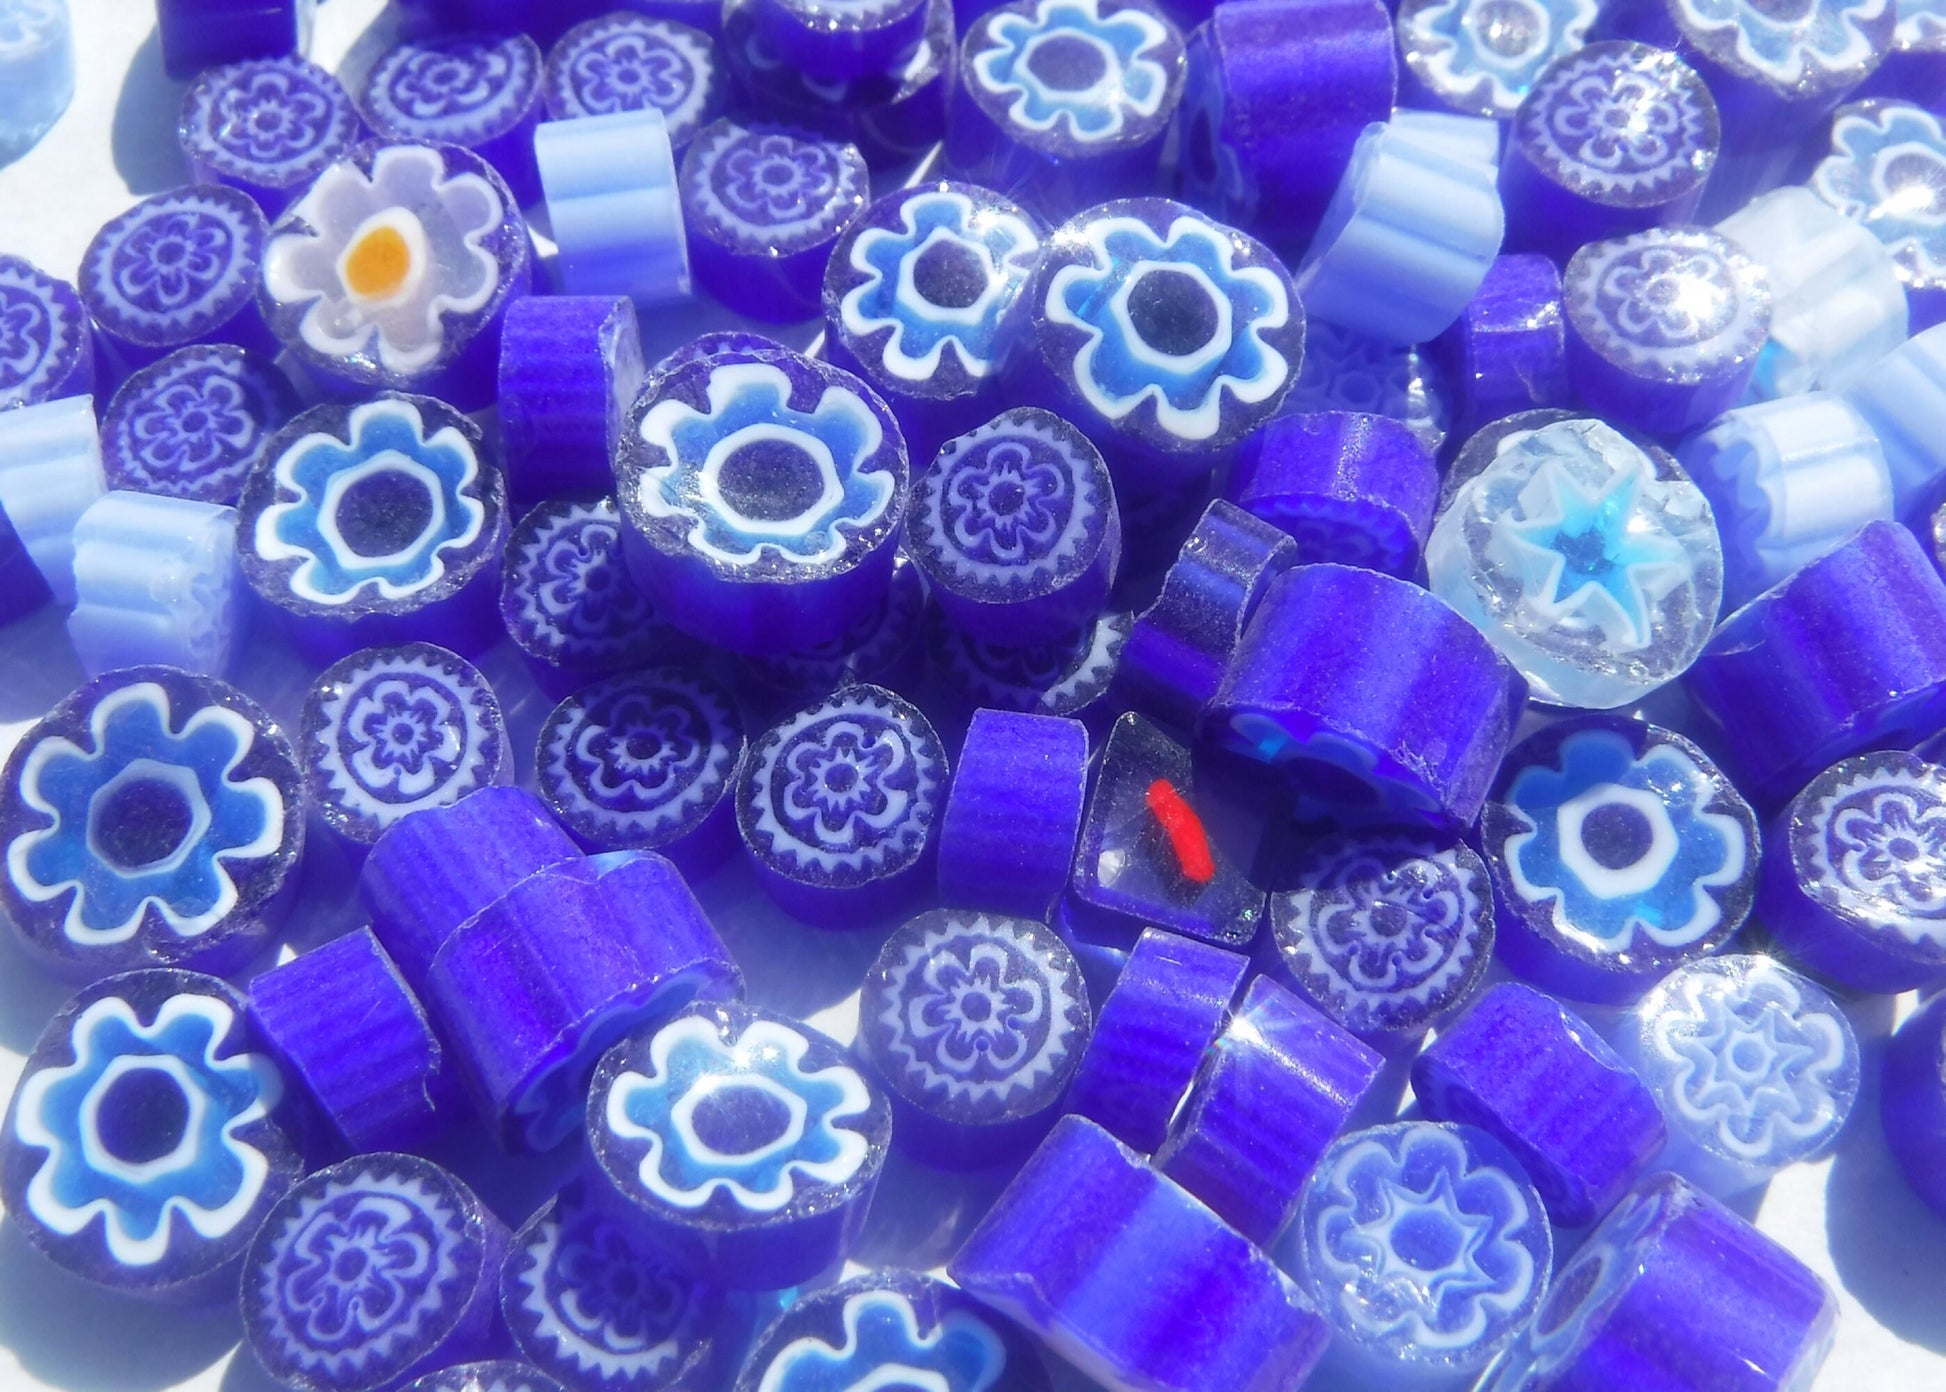 Greek Blue Mix Millefiori - 25 grams - Unique Mosaic Glass Tiles - Mix of Different Patterns